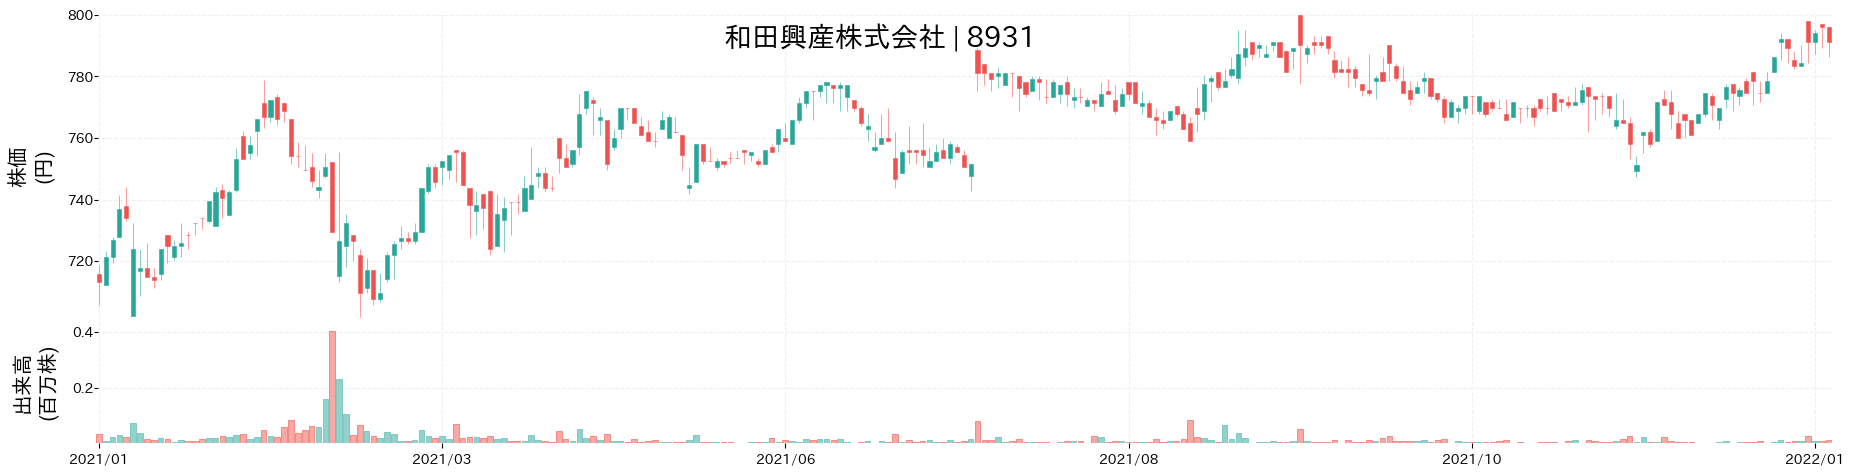 和田興産の株価推移(2021)